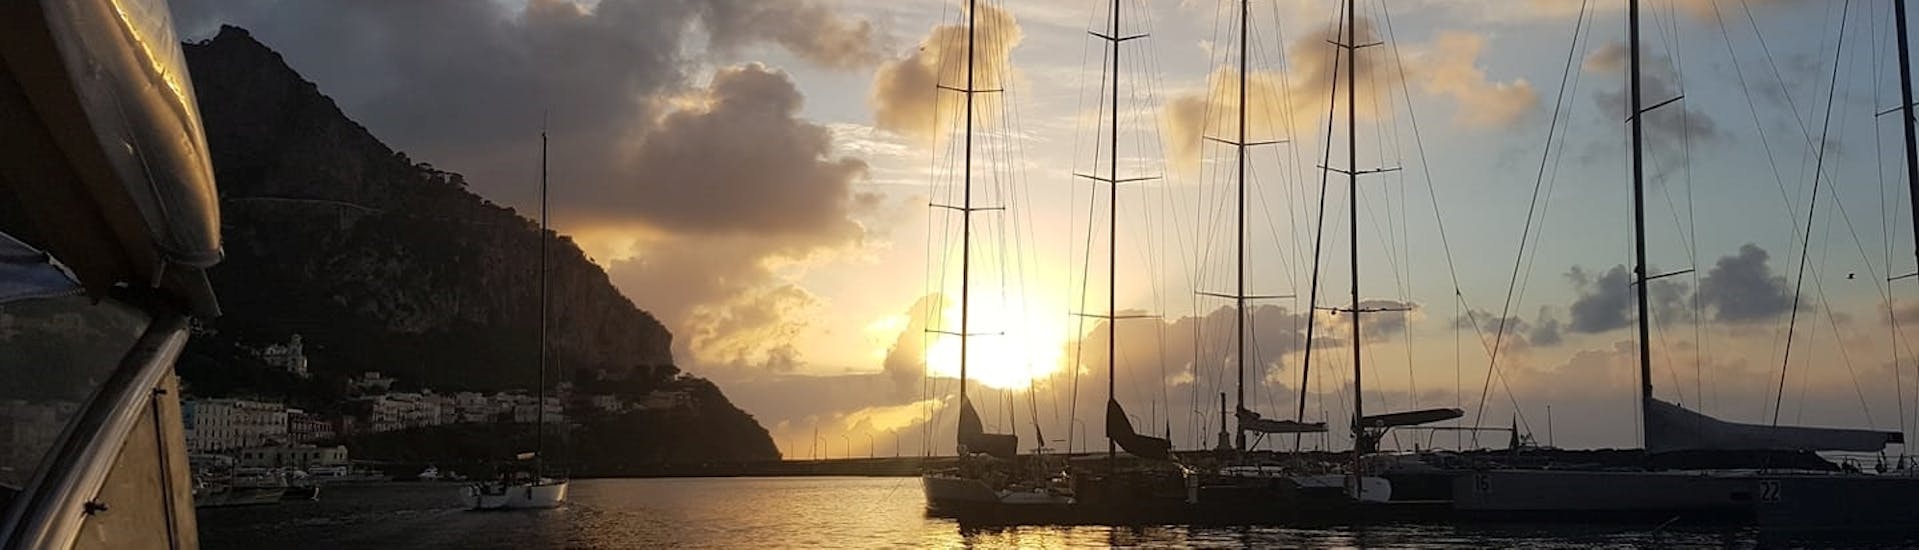 Geweldige zonsondergang aan boord van de privé boottochten van Sorrento langs de kust.